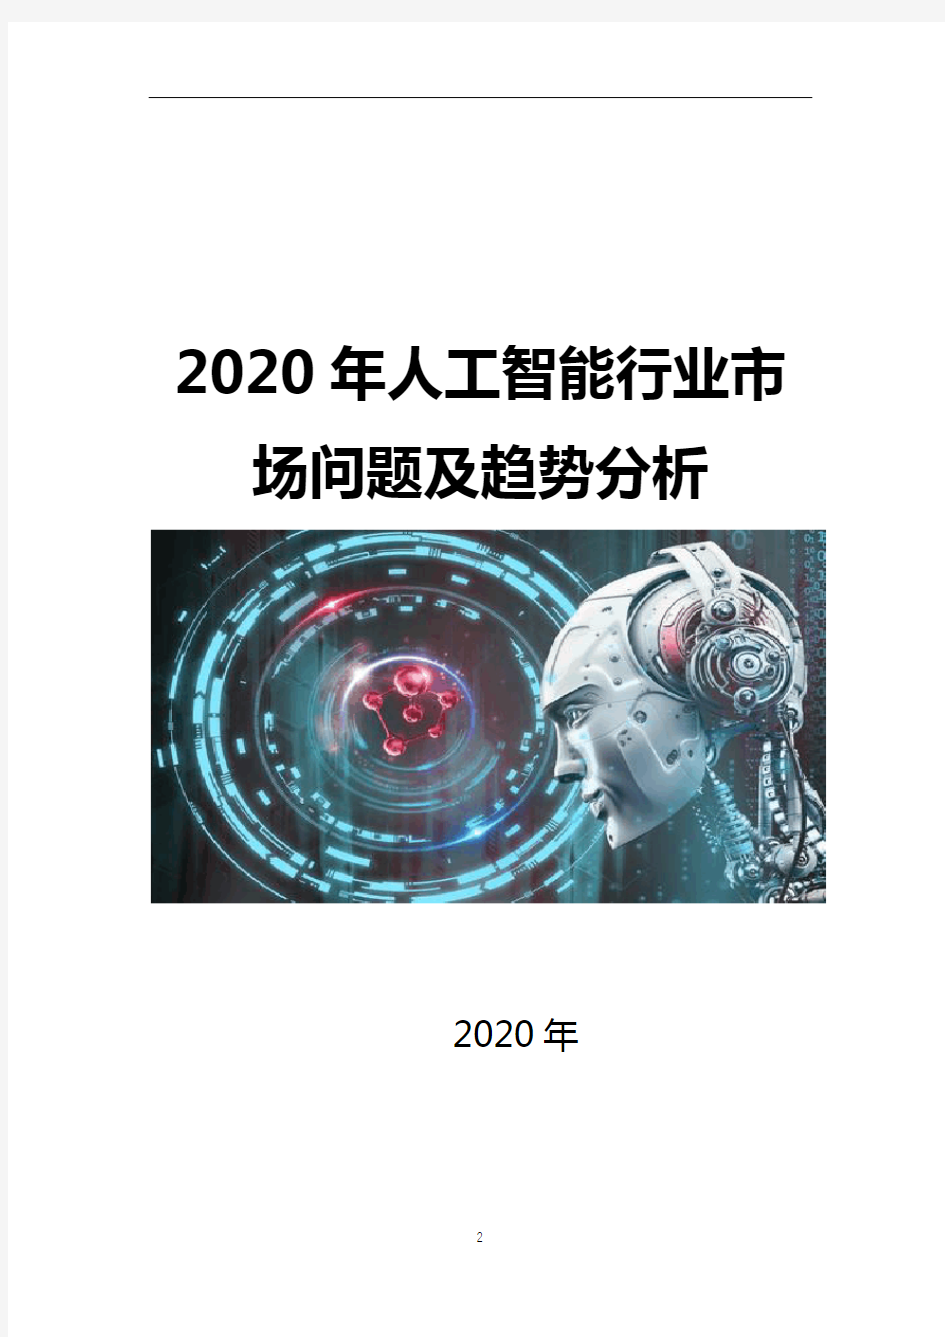 2020年人工智能行业问题及趋势分析